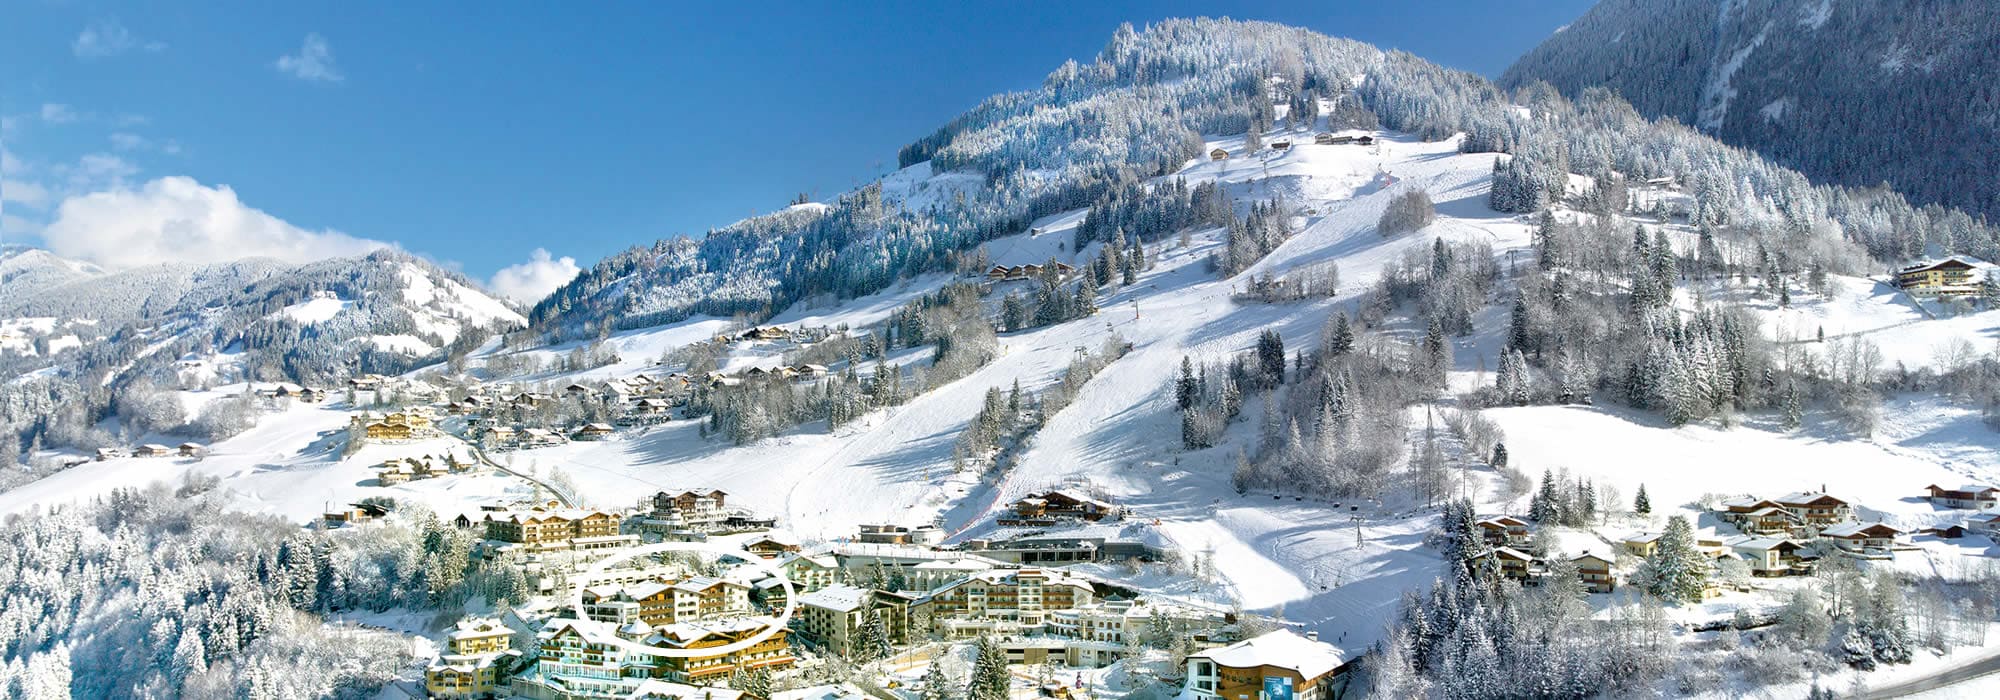 Skiurlaub im Hotel Alpendorf - mitten in Ski amadé